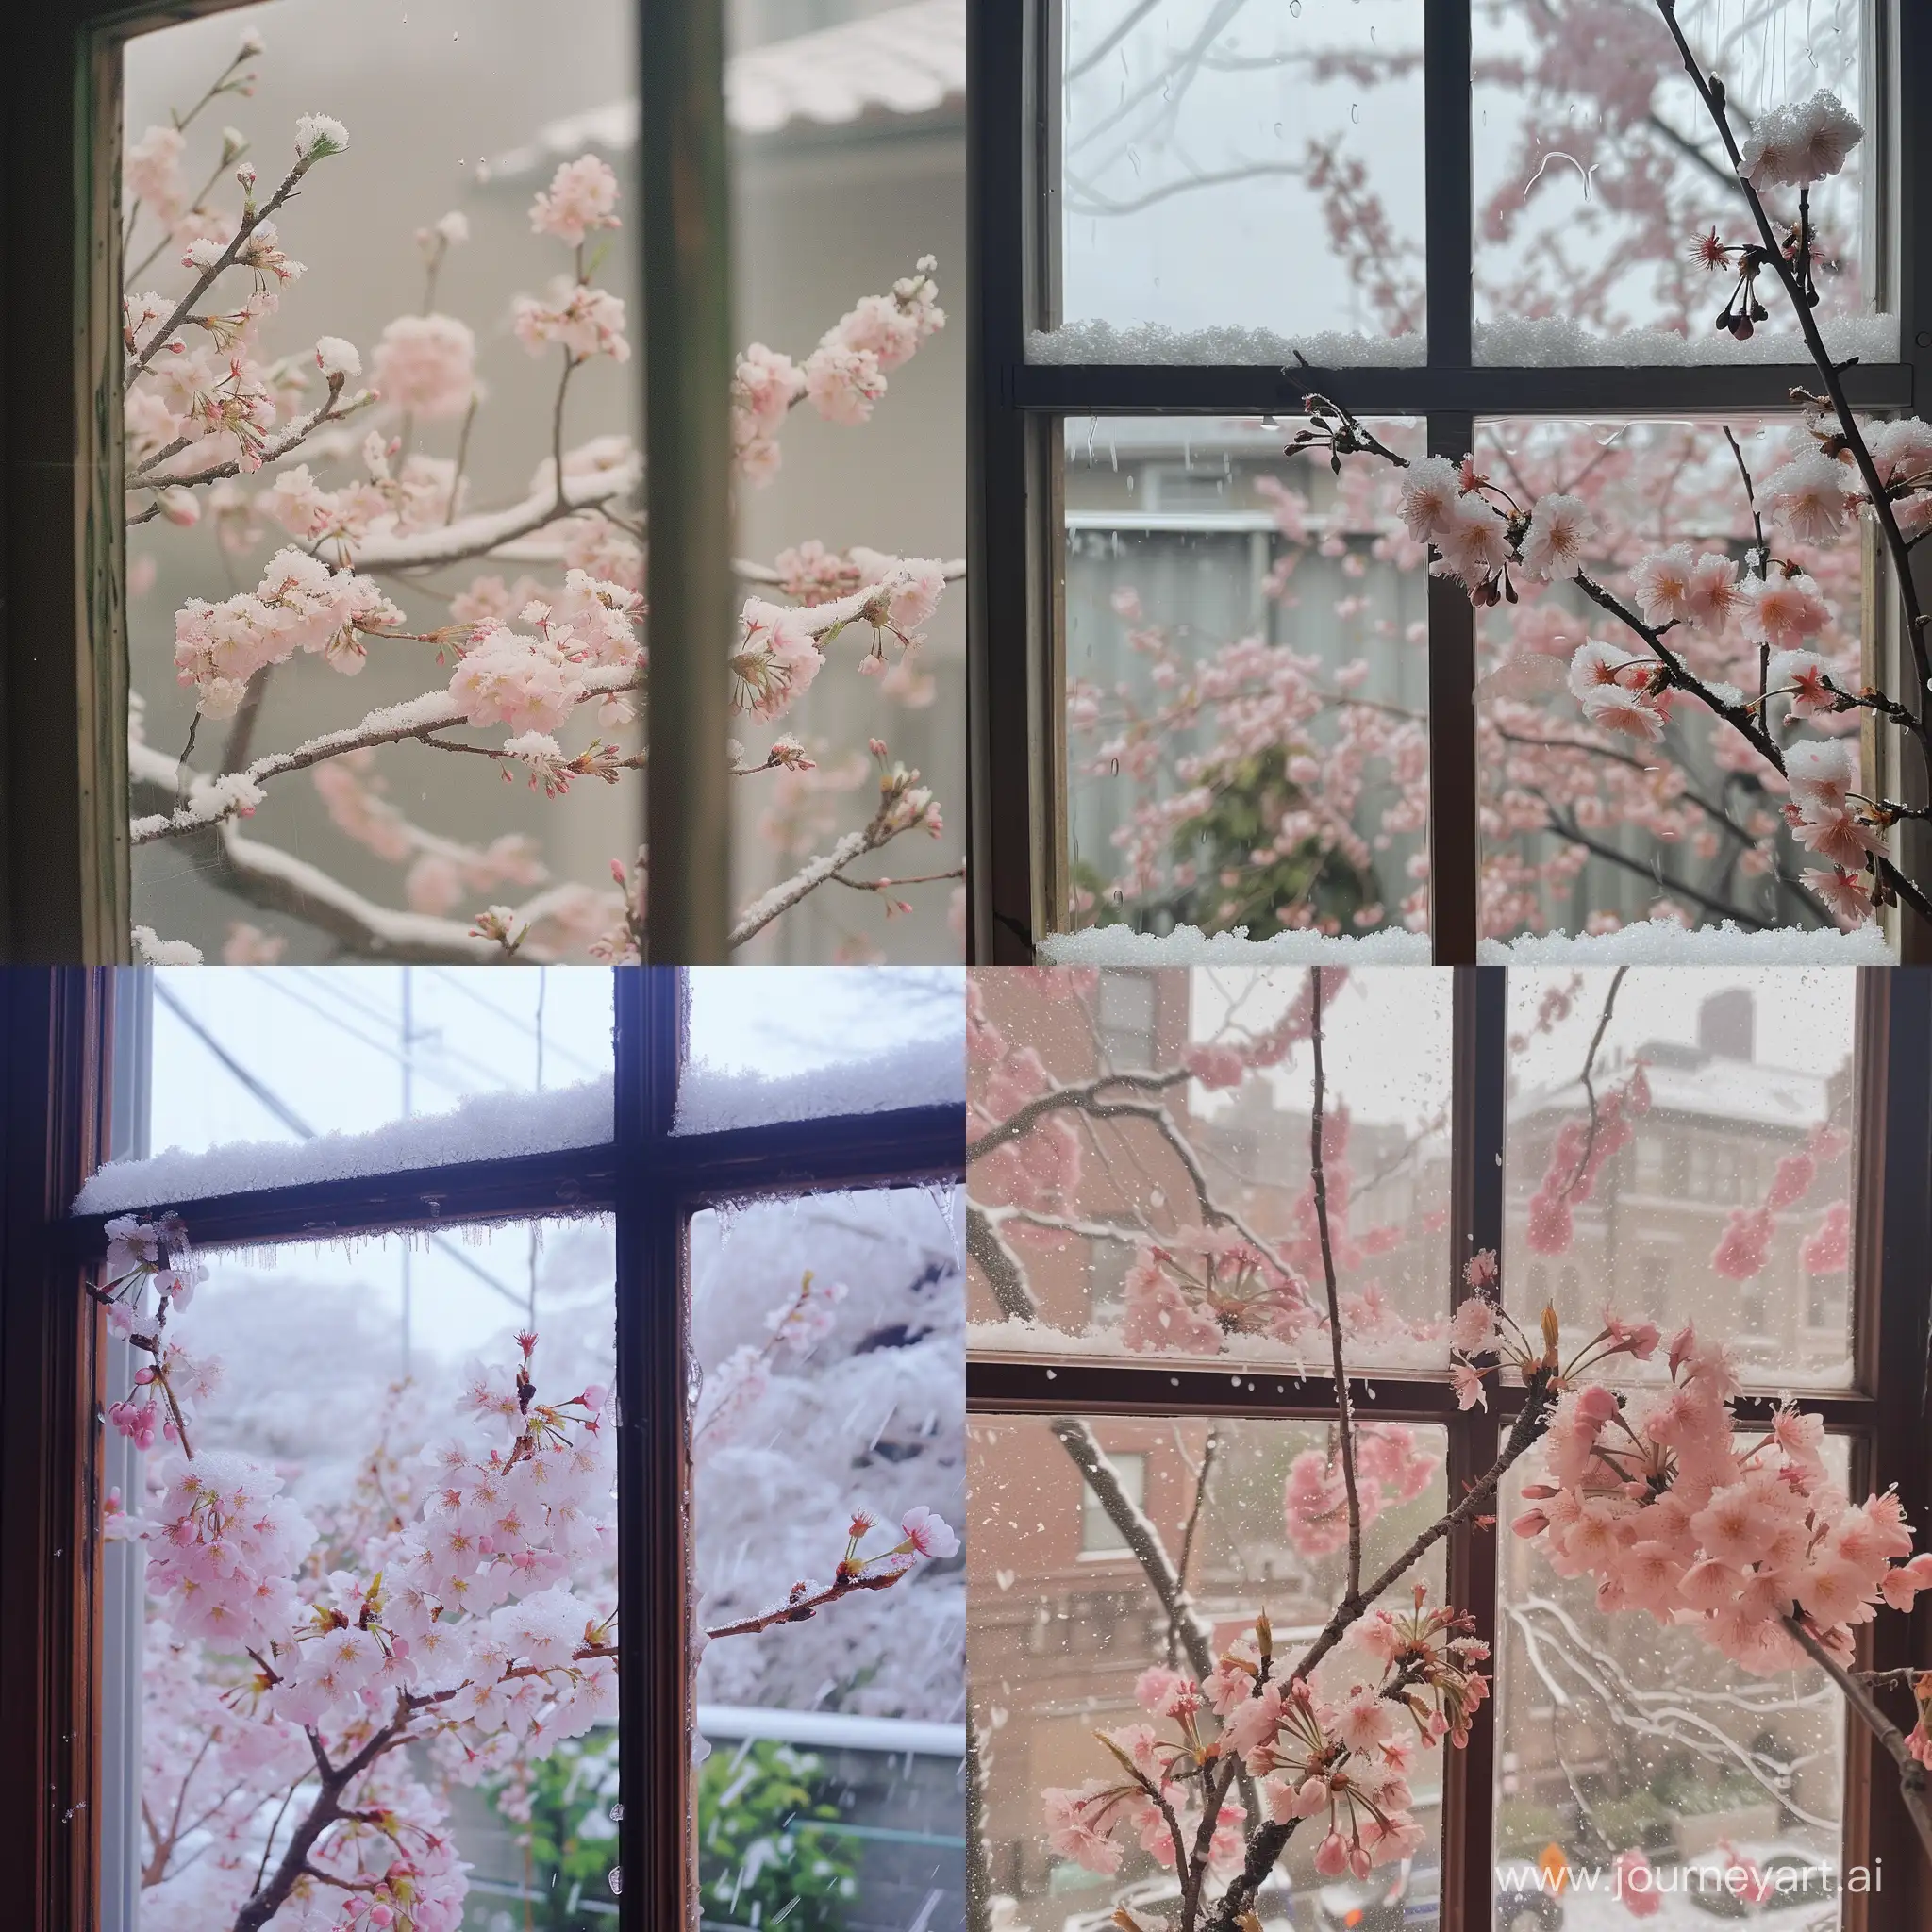 терпкое чувство, первый снег за окном над вечно цветущими сакурами